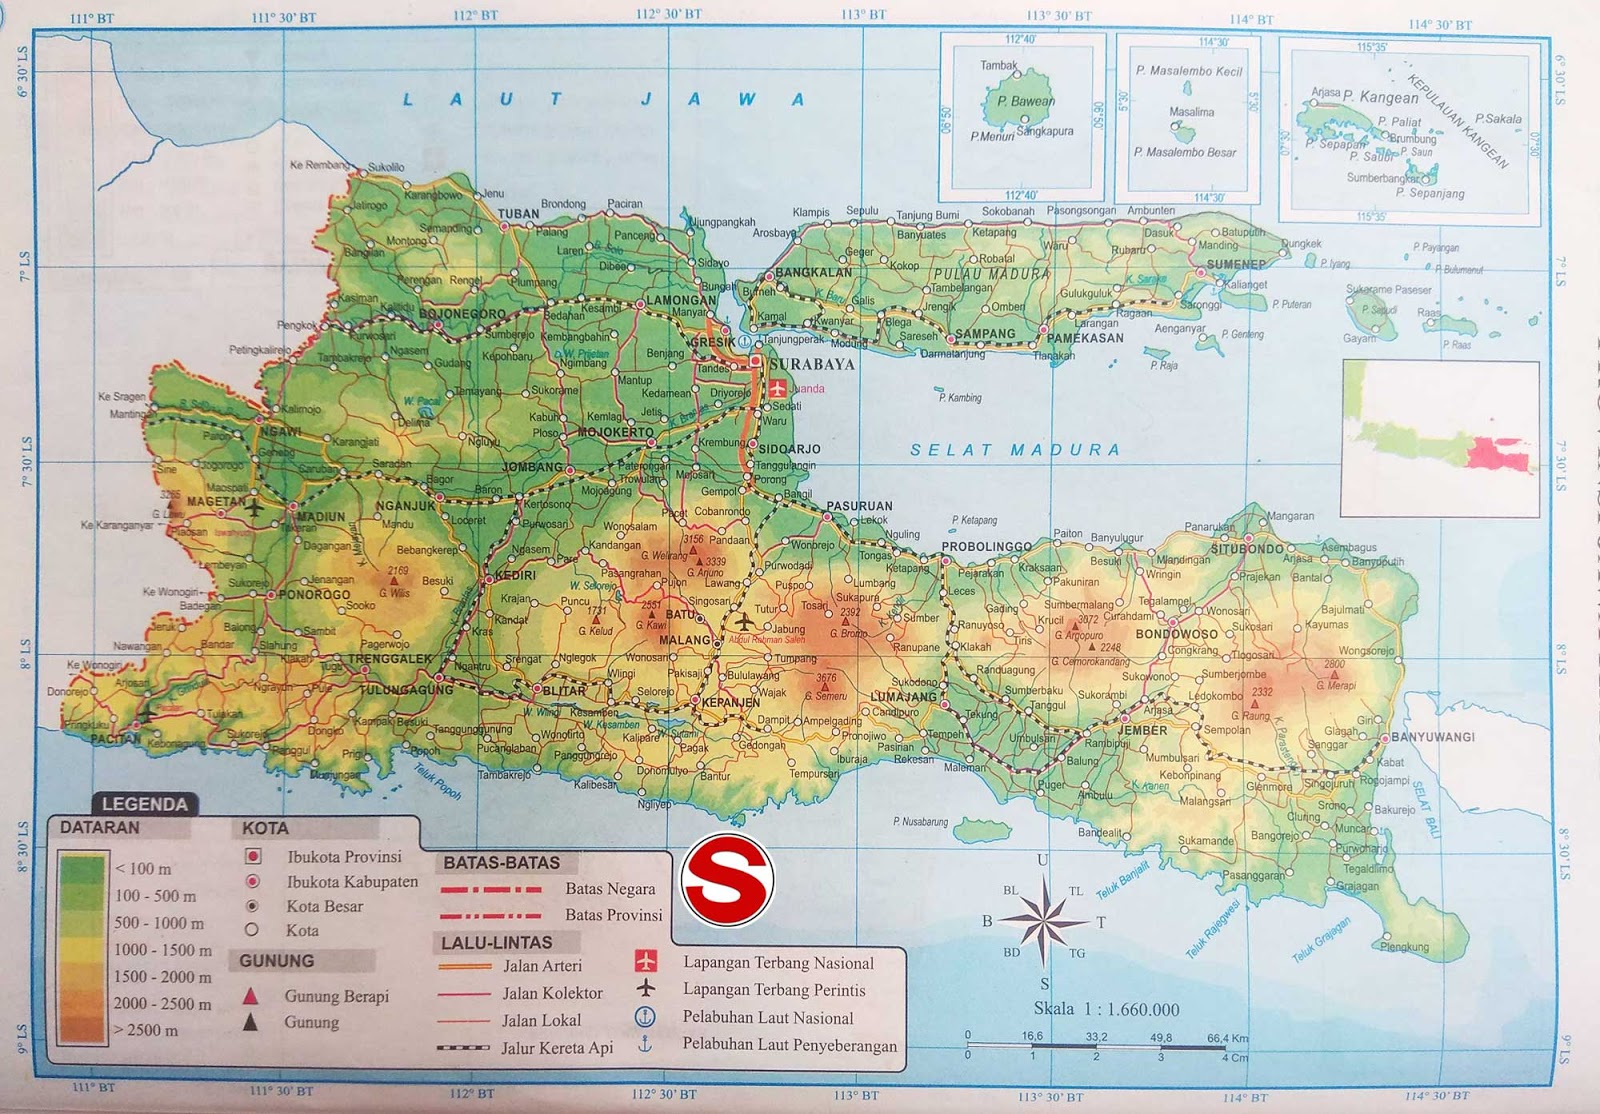  Peta Jawa Timur lengkap HD dengan 29 nama kabupaten dan 9 